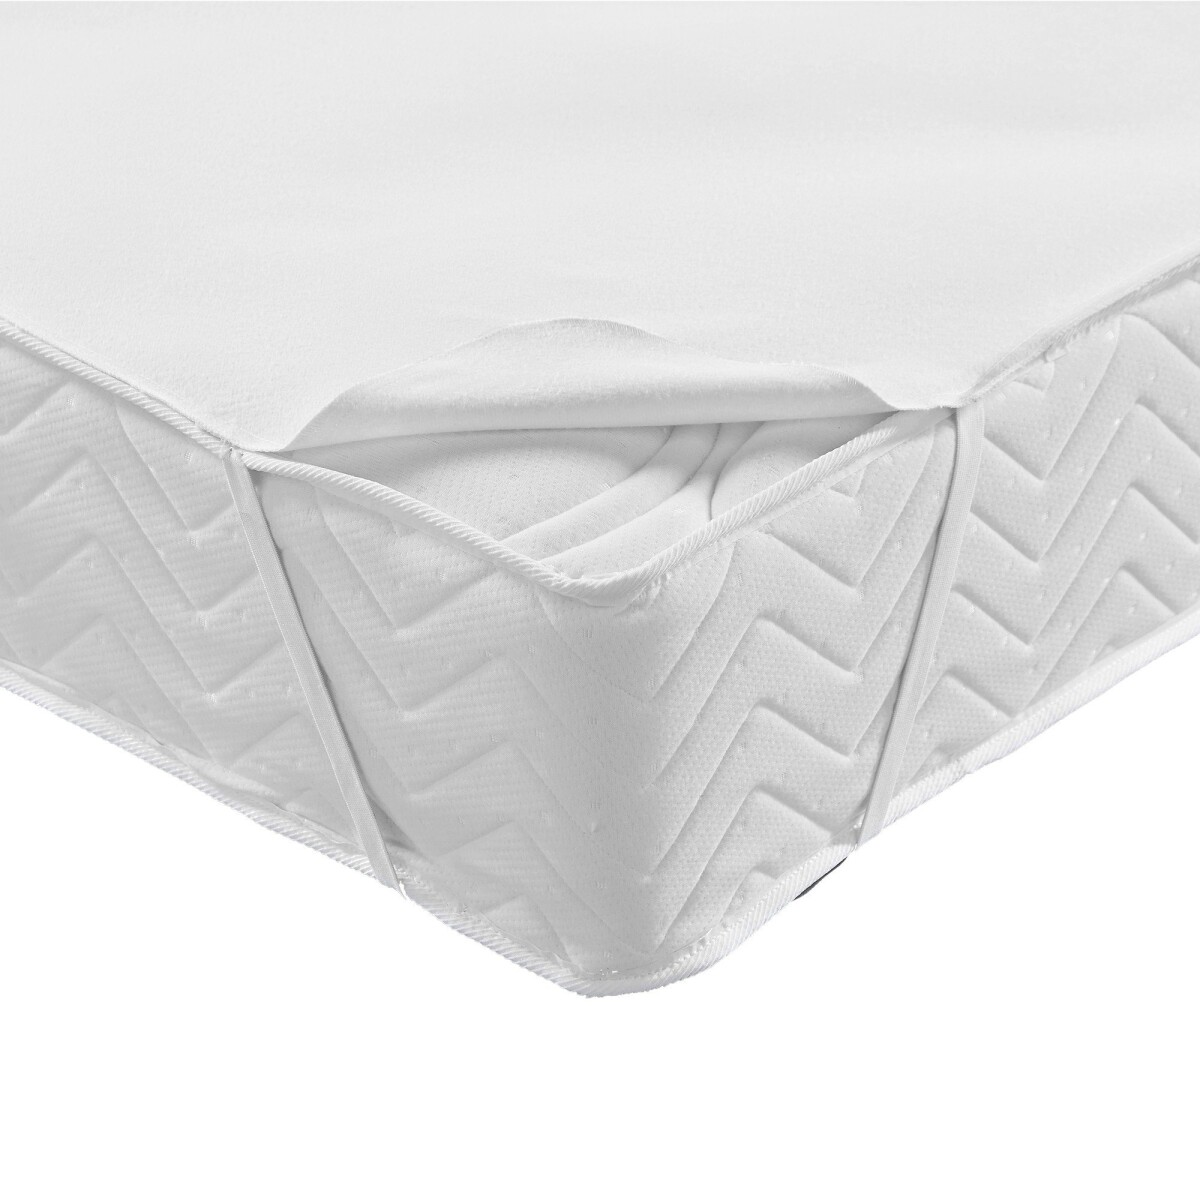 Moltonová absorpční ochrana matrace, standard 200g/m2